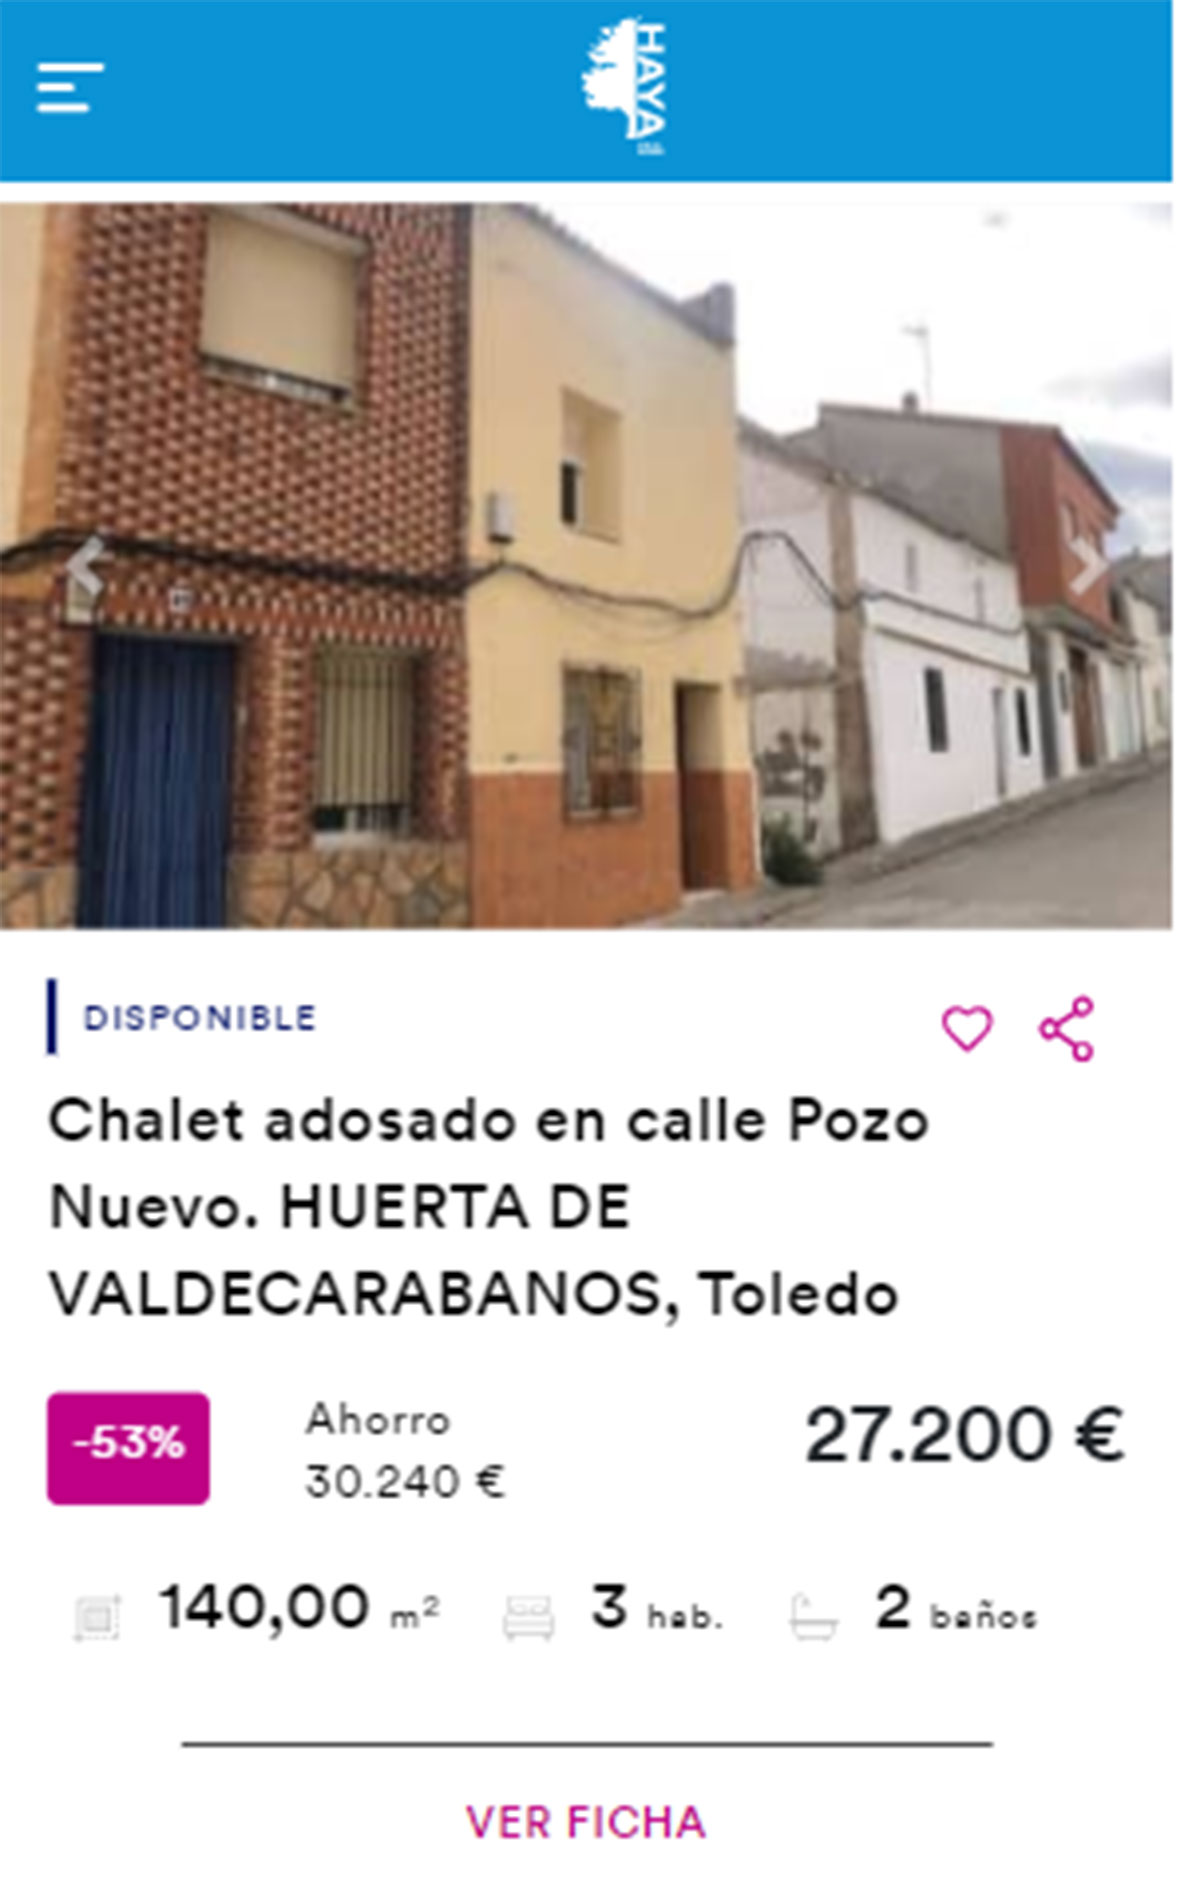 Chalet adosado en venta por 27.000 euros